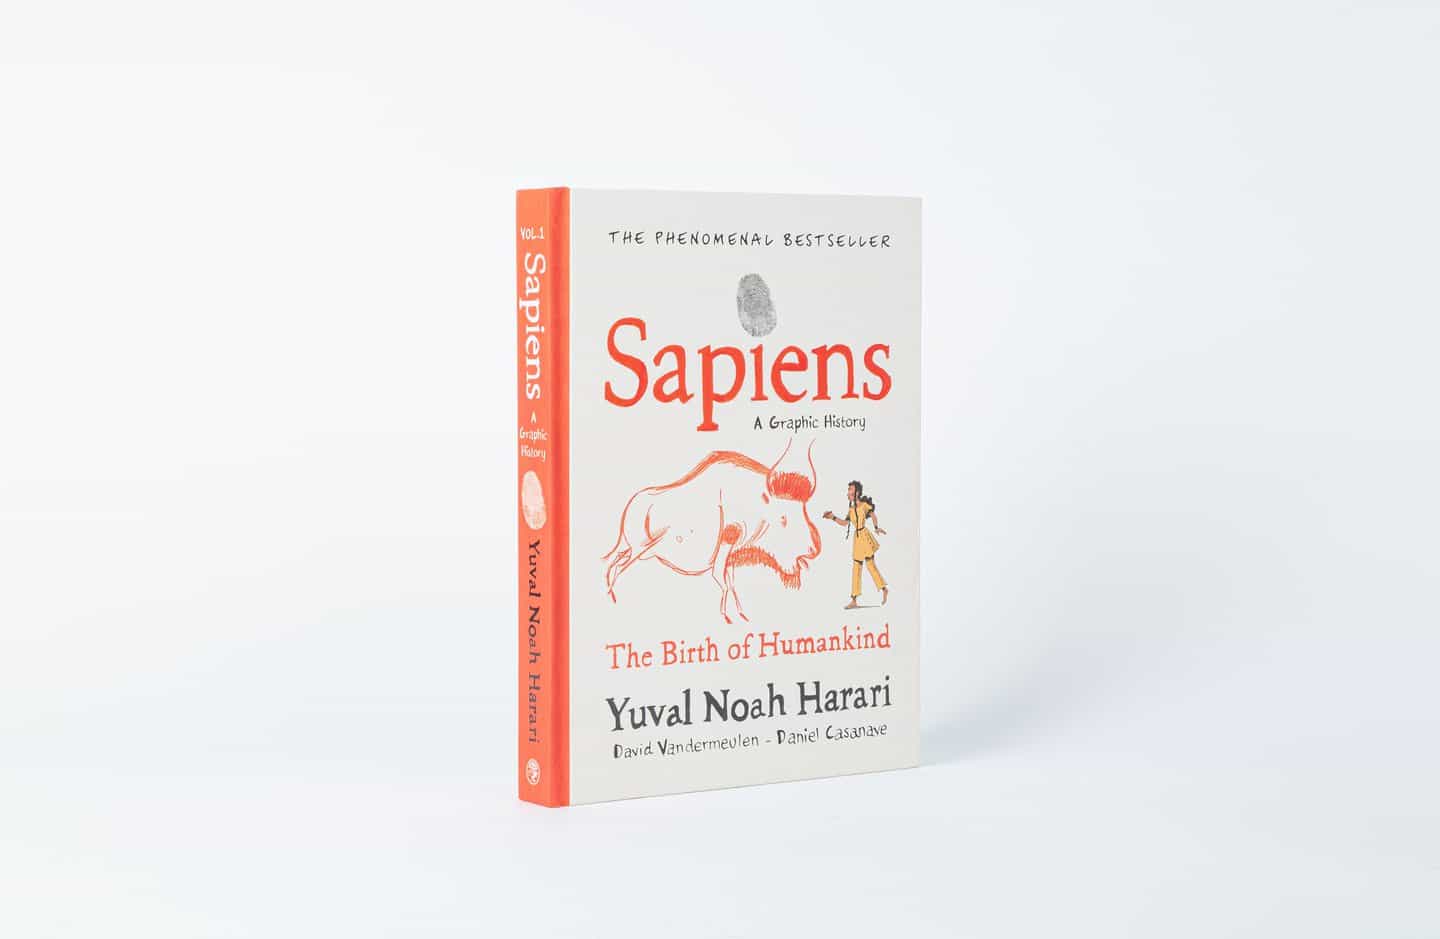 En la novela gráfica Sapiens, Daniel Casanave ilustra más vendido de la historia de la humanidad Yuval Noah Harari